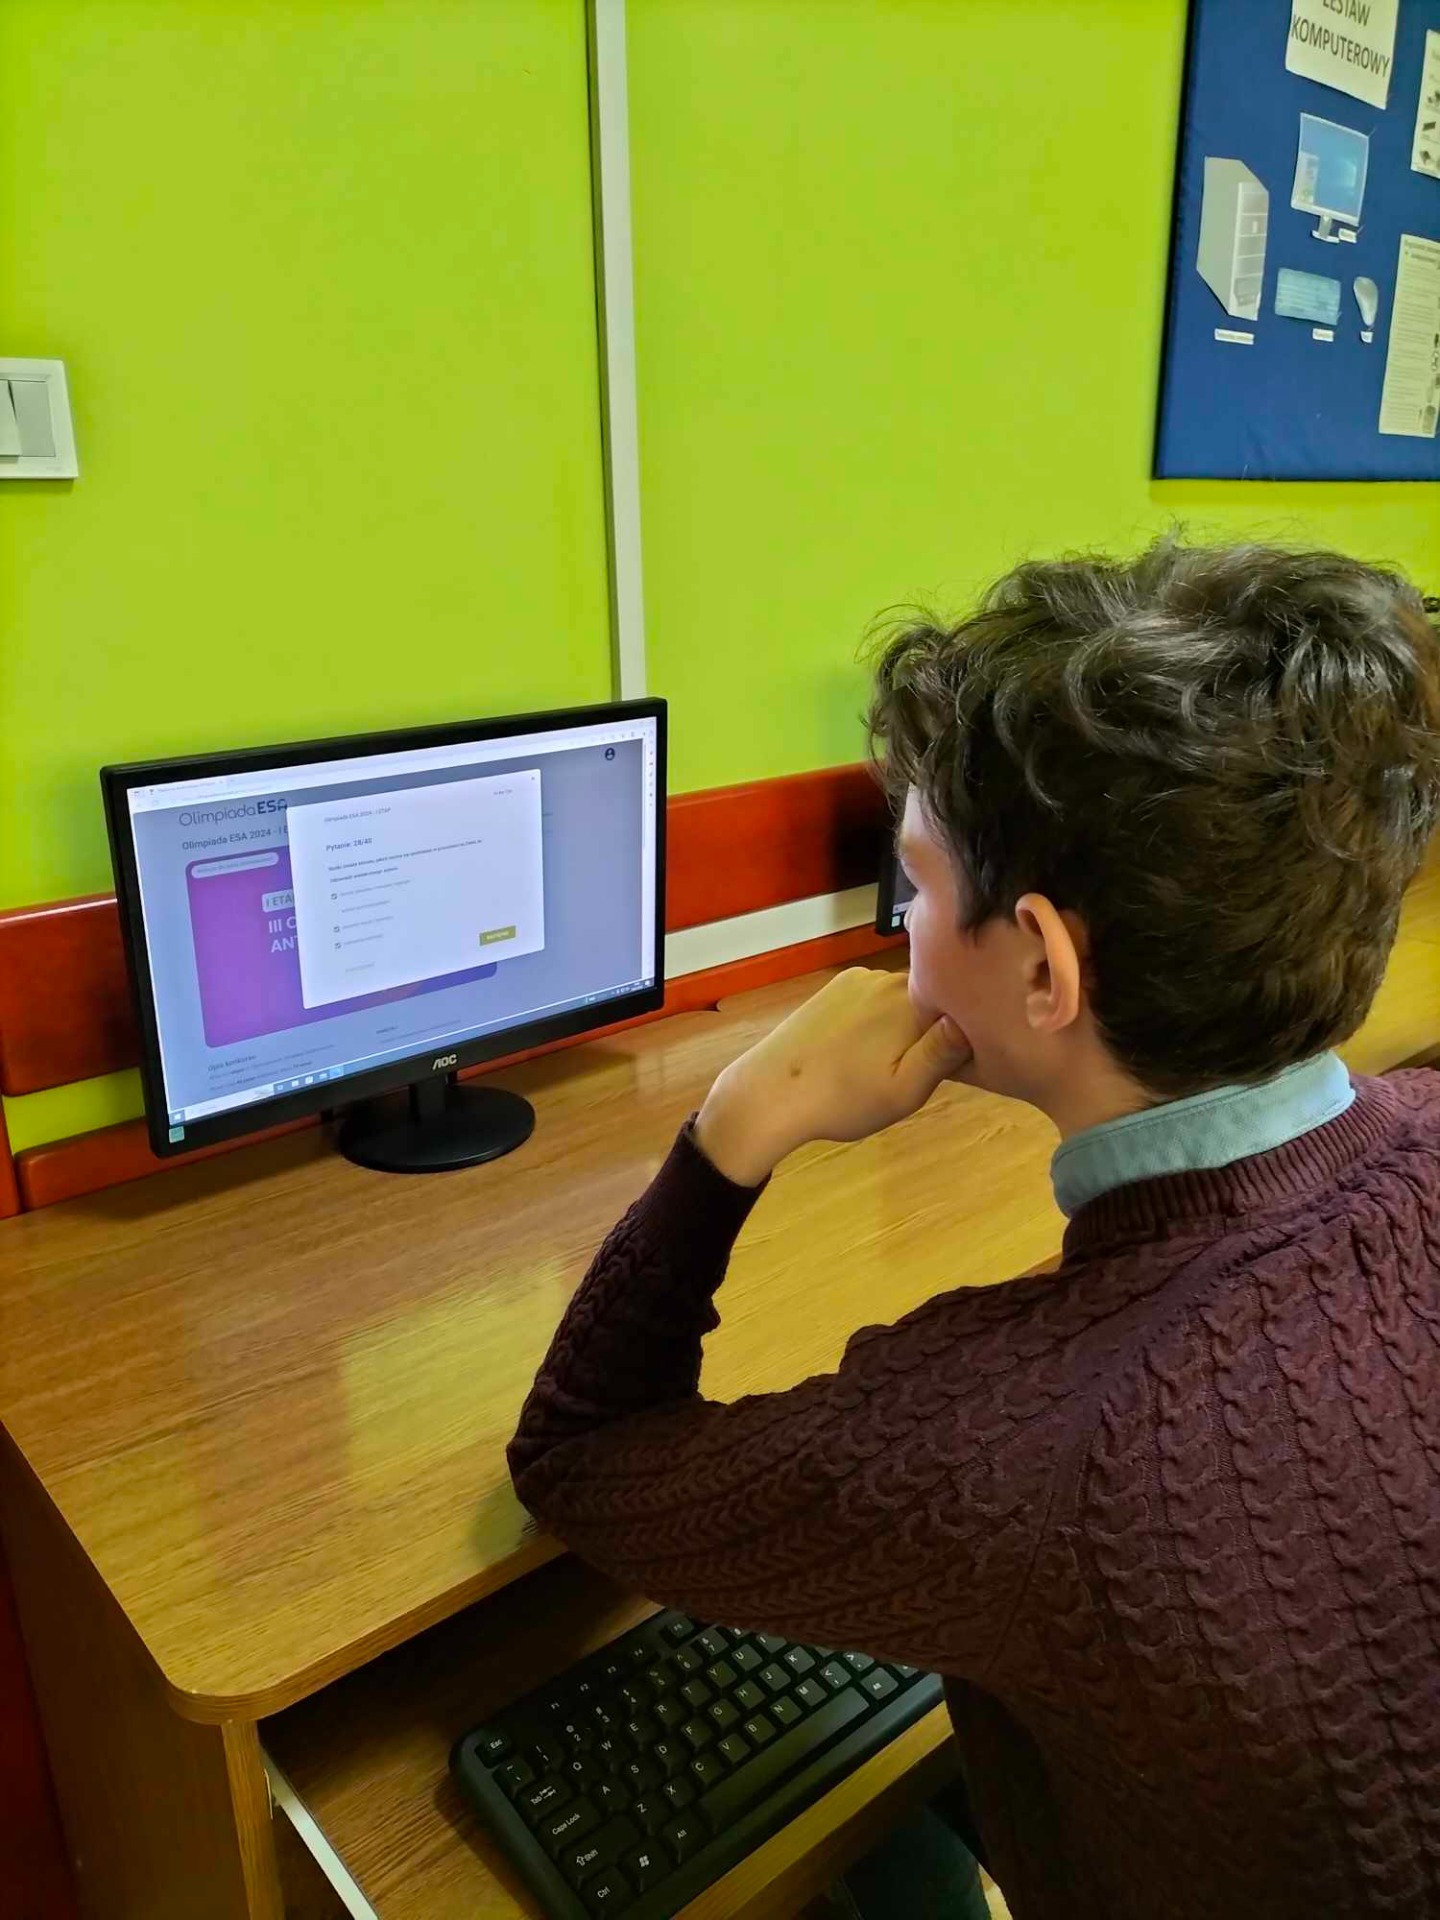 Uczniowie w pracowni komputerowej rozwiązują test konkursowy online.